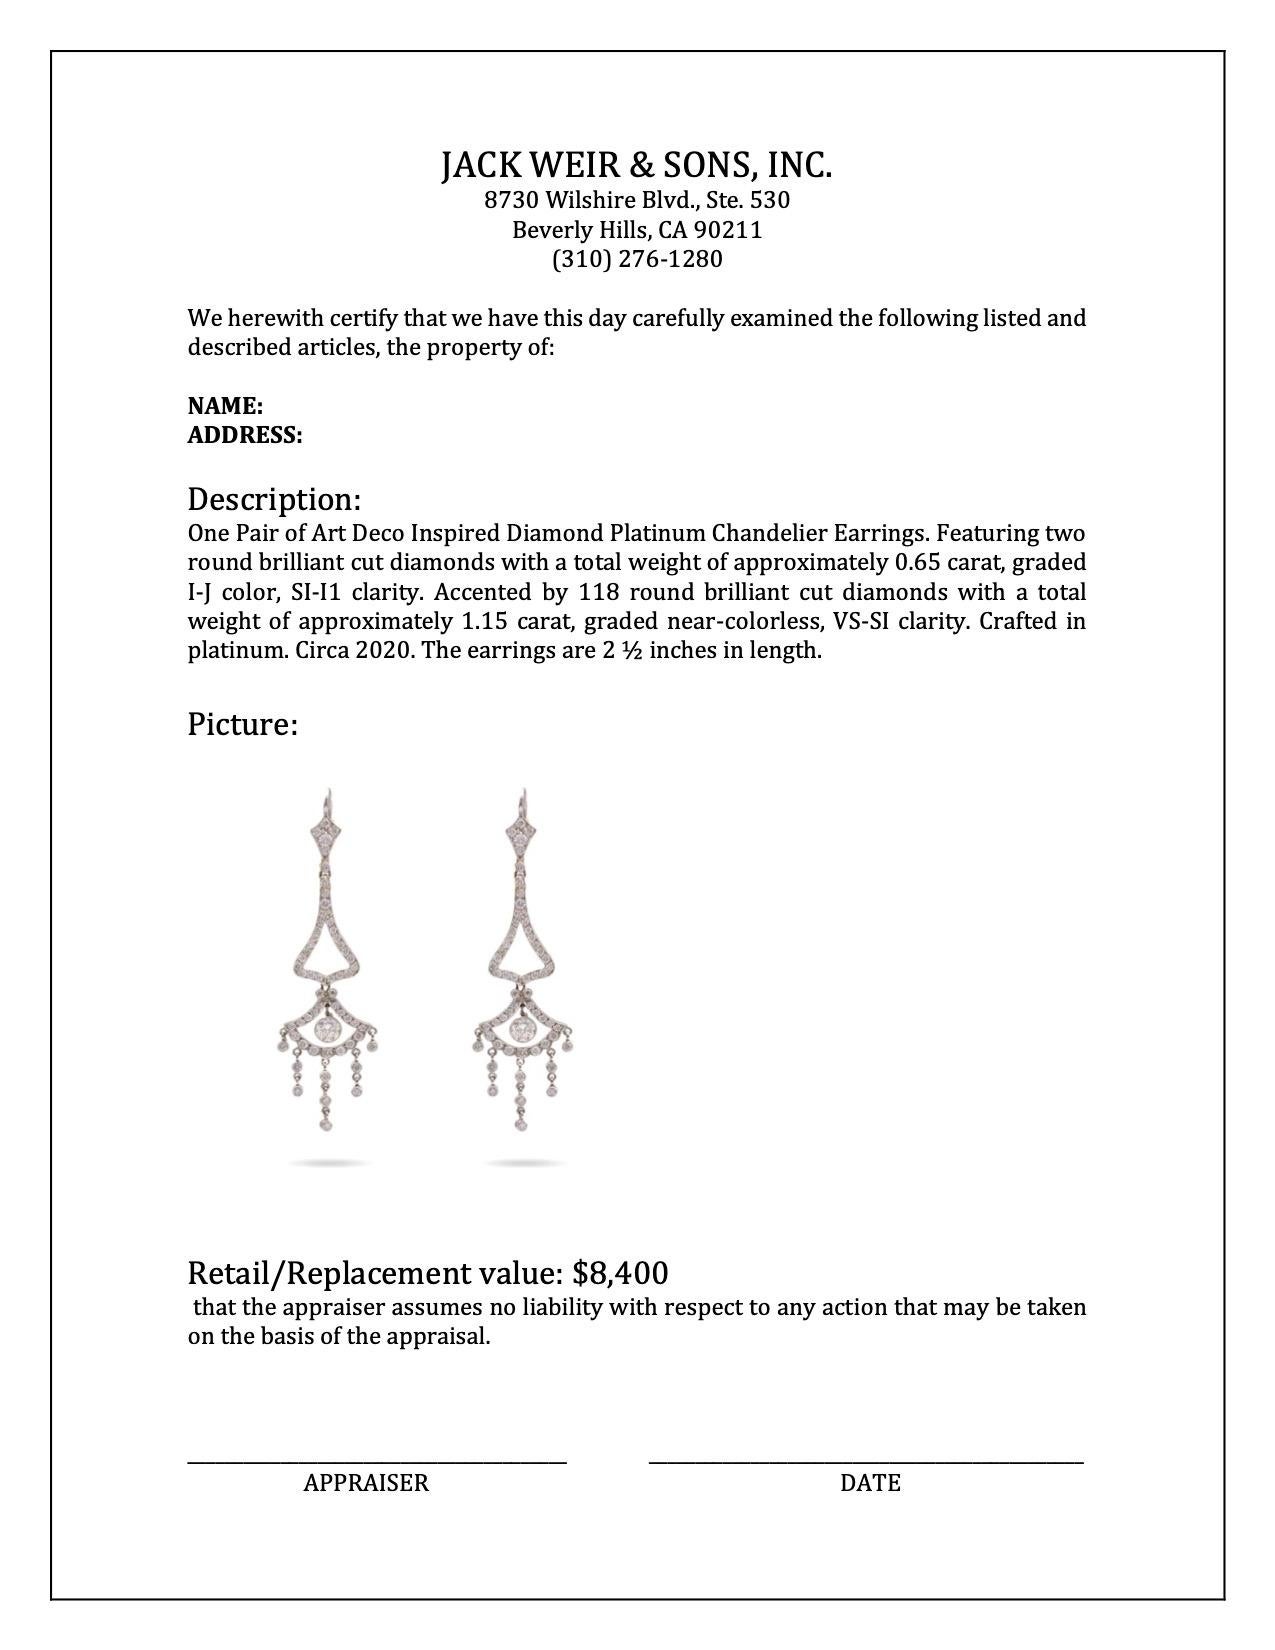 Women's or Men's Pair of Art Deco Inspired Diamond Platinum Chandelier Earrings For Sale